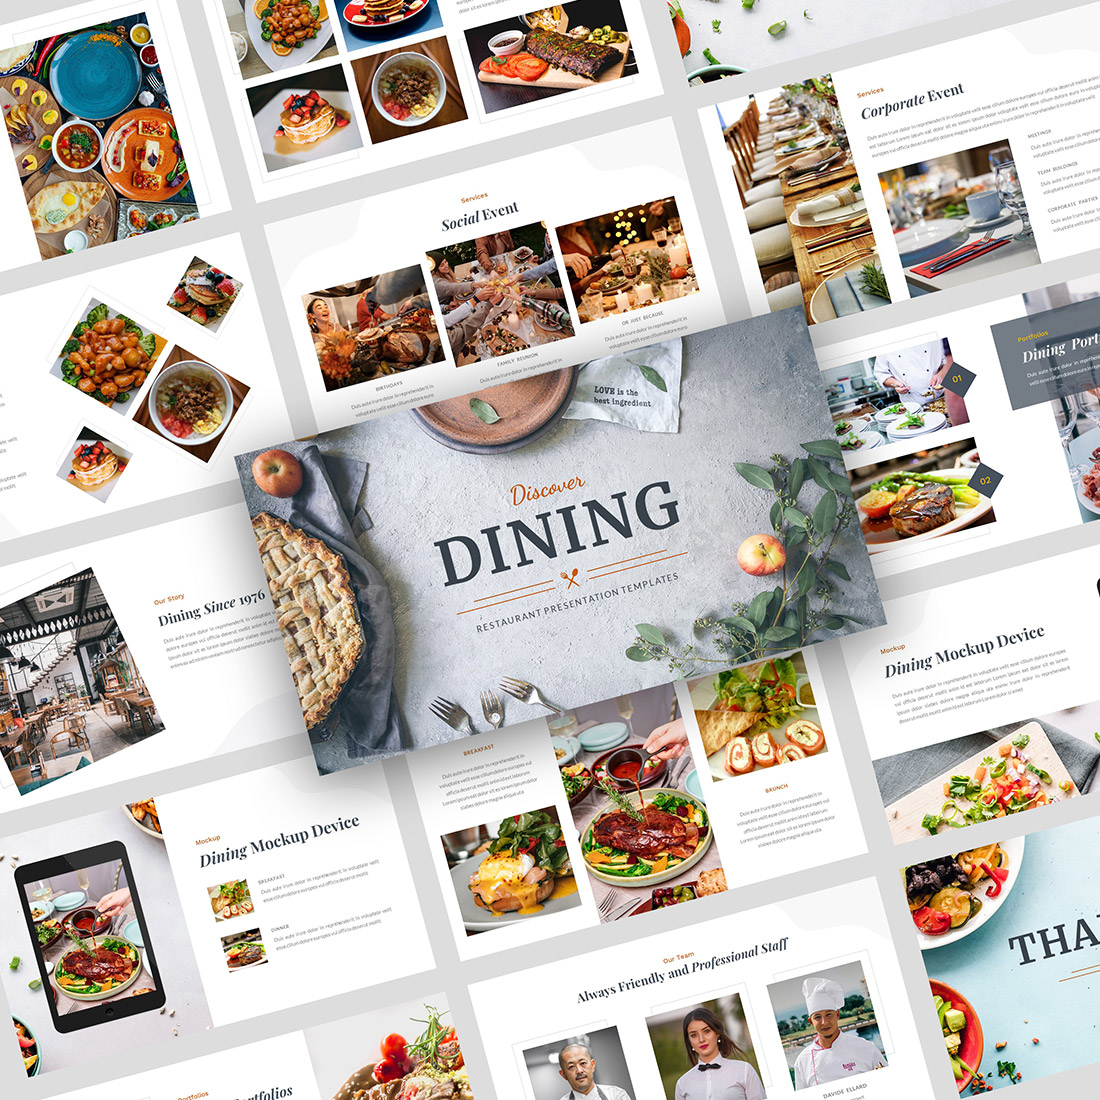 Dining Presentation Google Slides Template cover image.